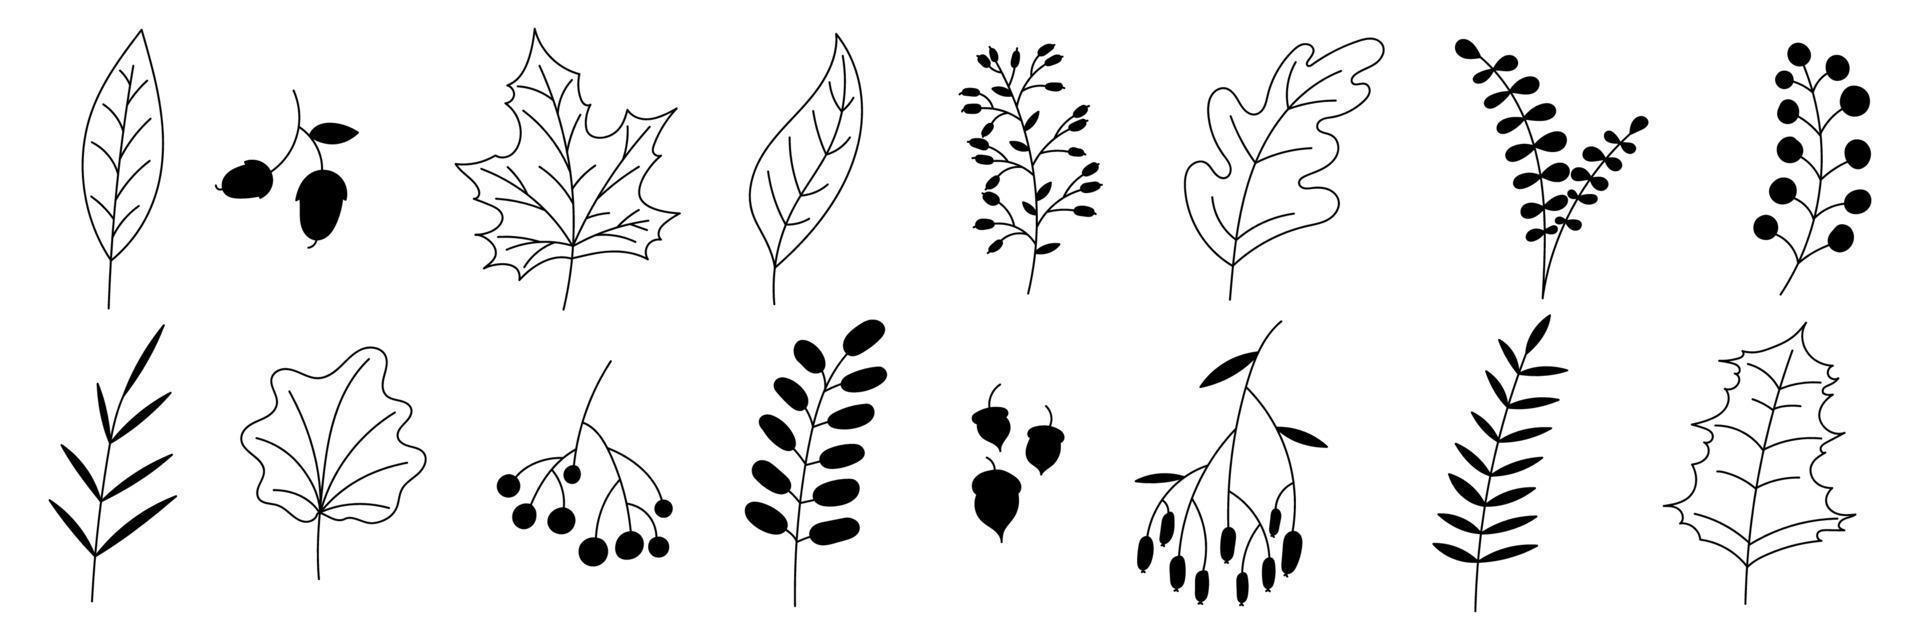 colección de otoño dibujada a mano con plantas y hojas de temporada. conjunto de plantas dibujadas a mano, hojas, flores. siluetas de elementos naturales para fondos estacionales. ilustración vectorial vector